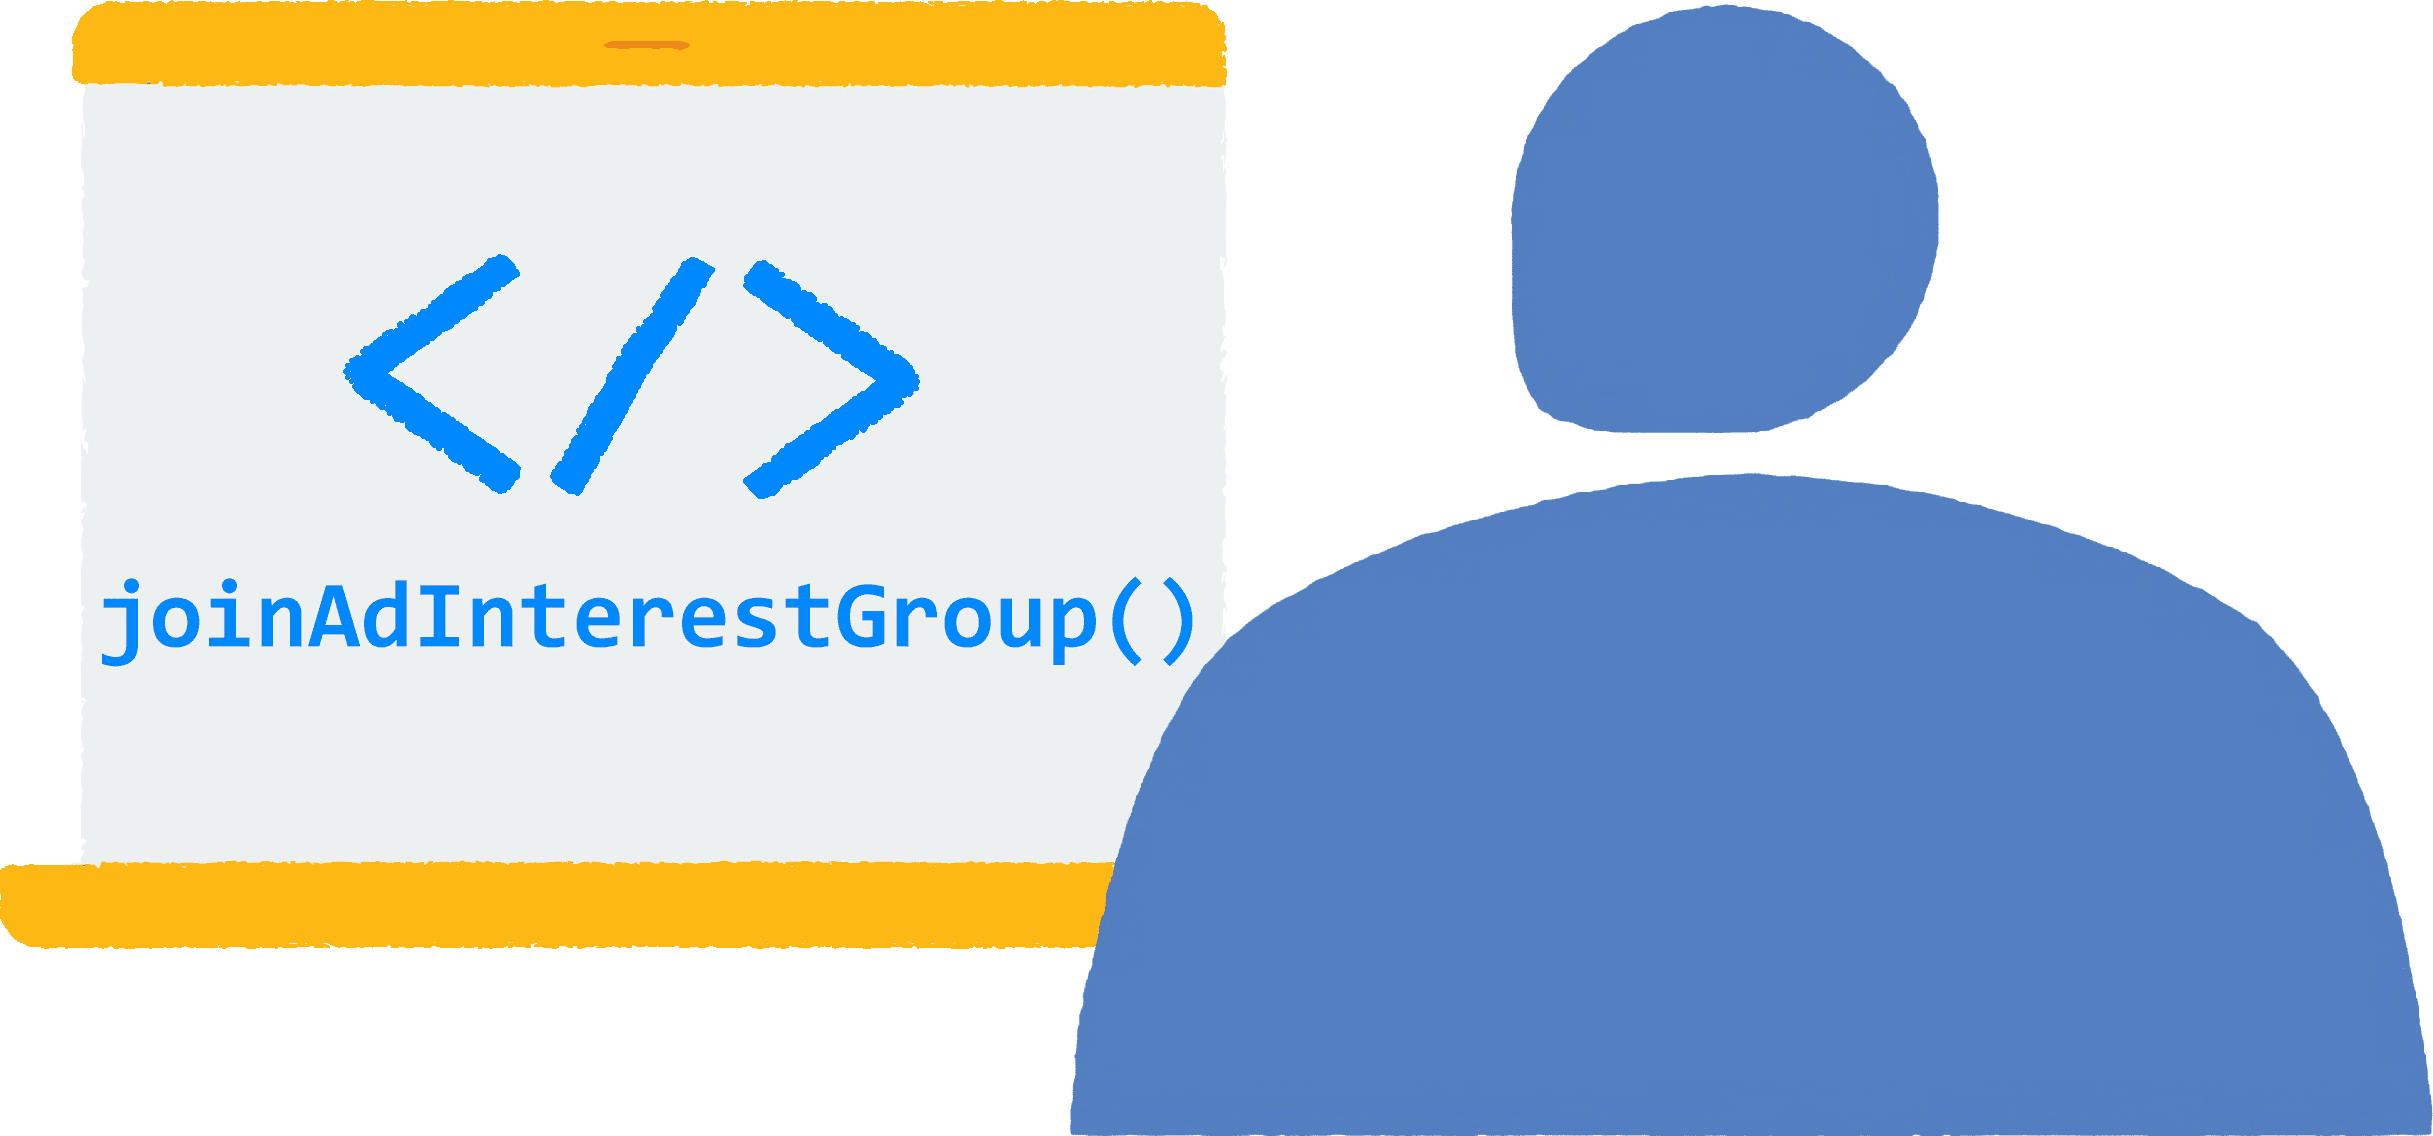 Một người dùng mở một trình duyệt trên máy tính xách tay và truy cập vào một trang web. Mã JavaScript
  để tham gia nhóm quan tâm quảng cáo đang chạy trong trình duyệt.